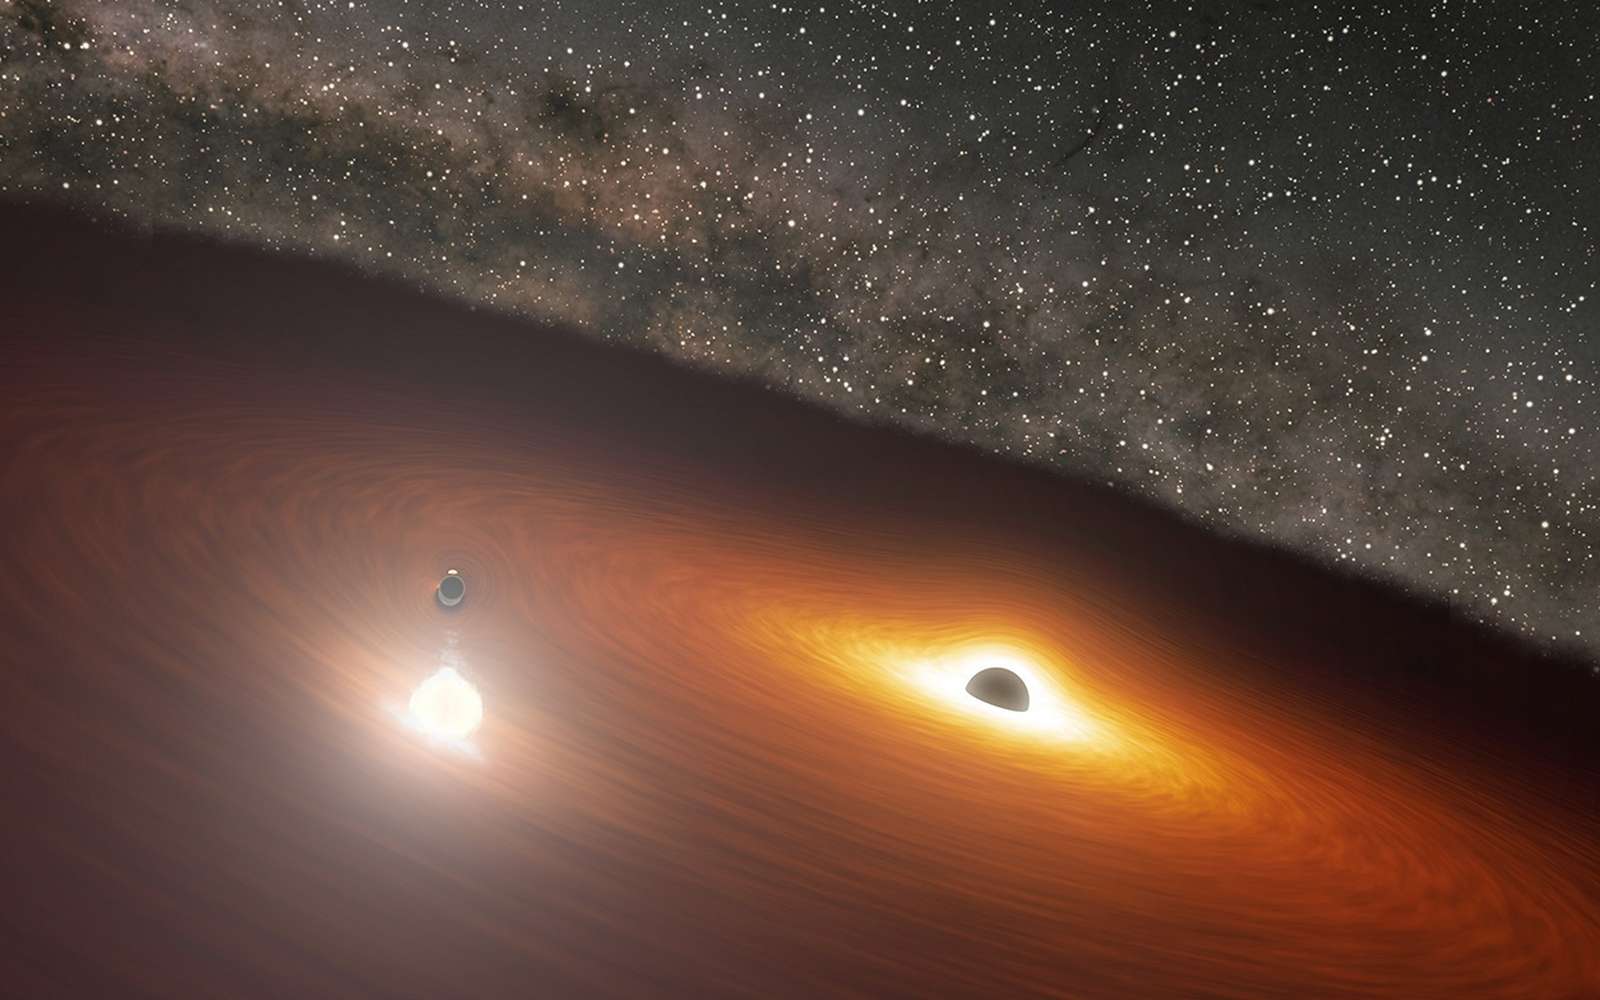 Cette image d'artiste montre deux trous noirs supermassifs dans la galaxie possédant le quasar nommé OJ 287. Le plus petit trou noir tourne autour du plus grand, qui est également entouré d'un disque de gaz. Lorsque le plus petit trou noir traverse le disque, il produit un flash de lumière dont la luminosité est supérieure à 1 milliard d'étoiles. © Nasa/JPL-Caltech